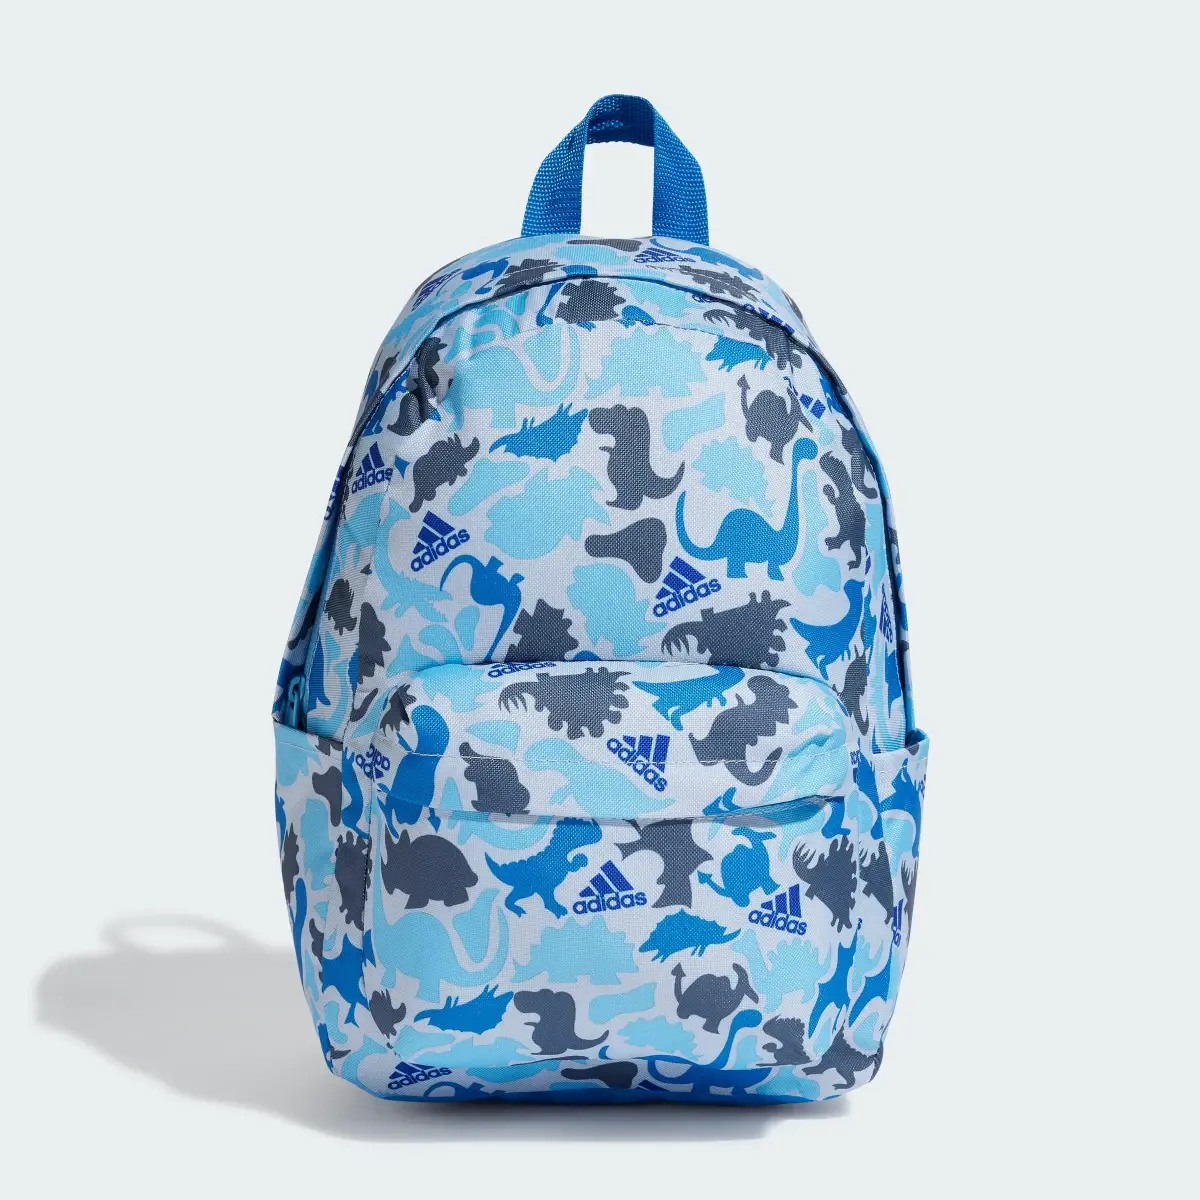 Adidas Printed Backpack Kids. 2